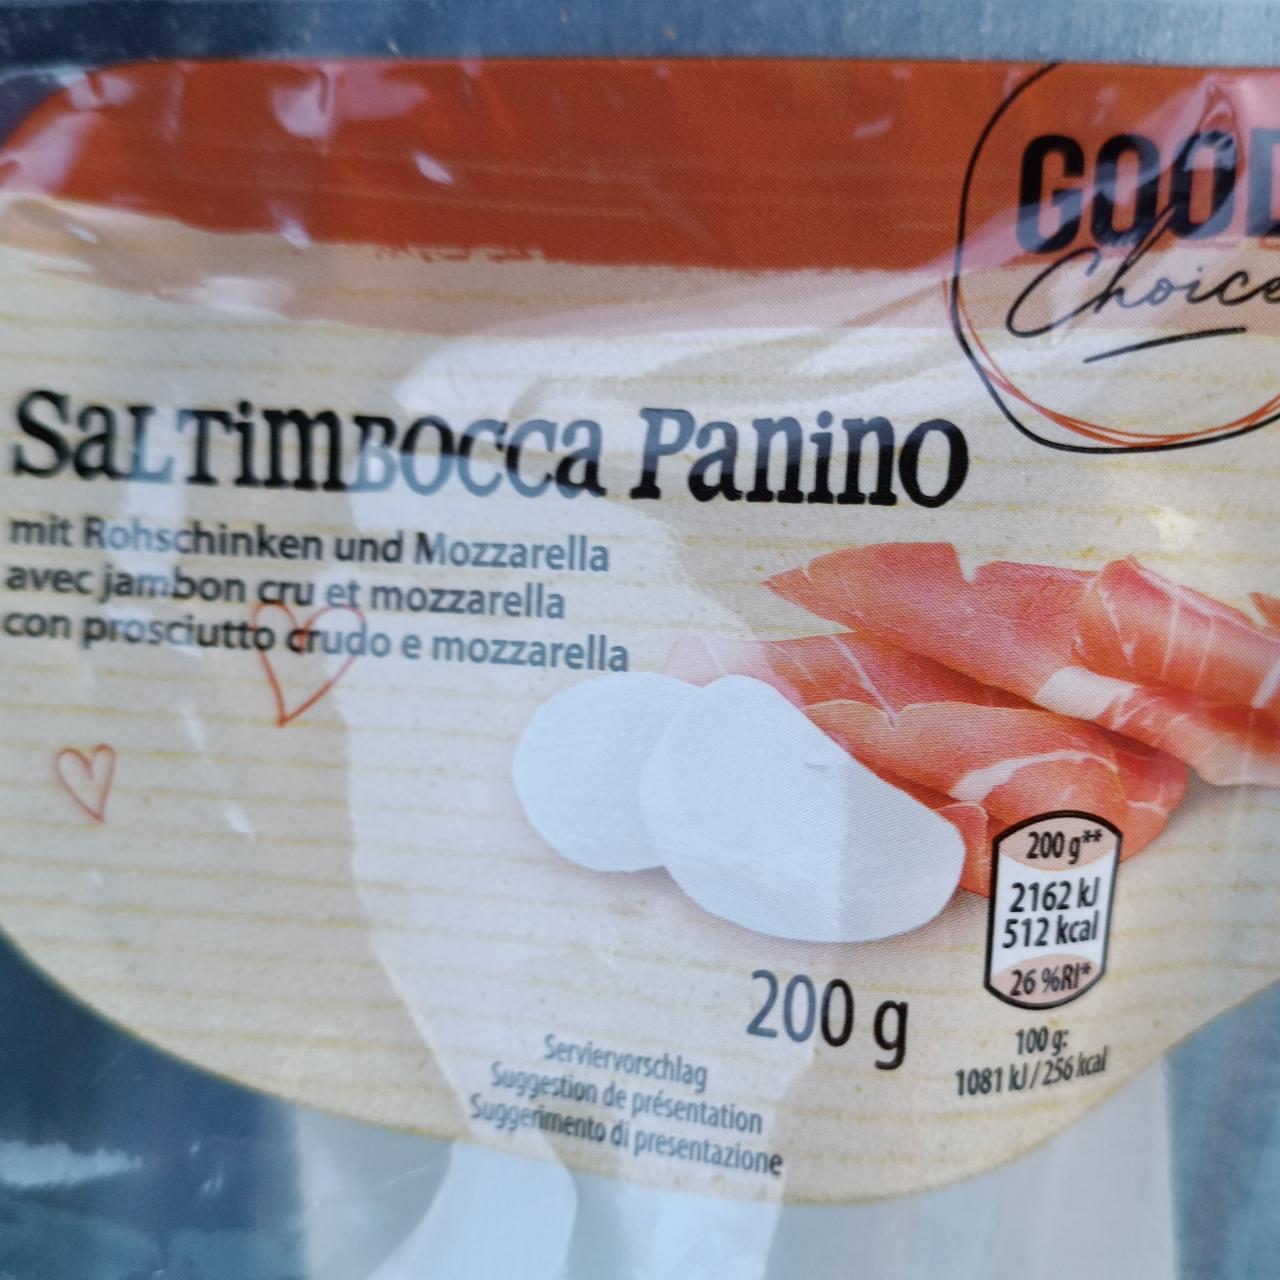 Képek - Saltimbocca Panino Good Choice